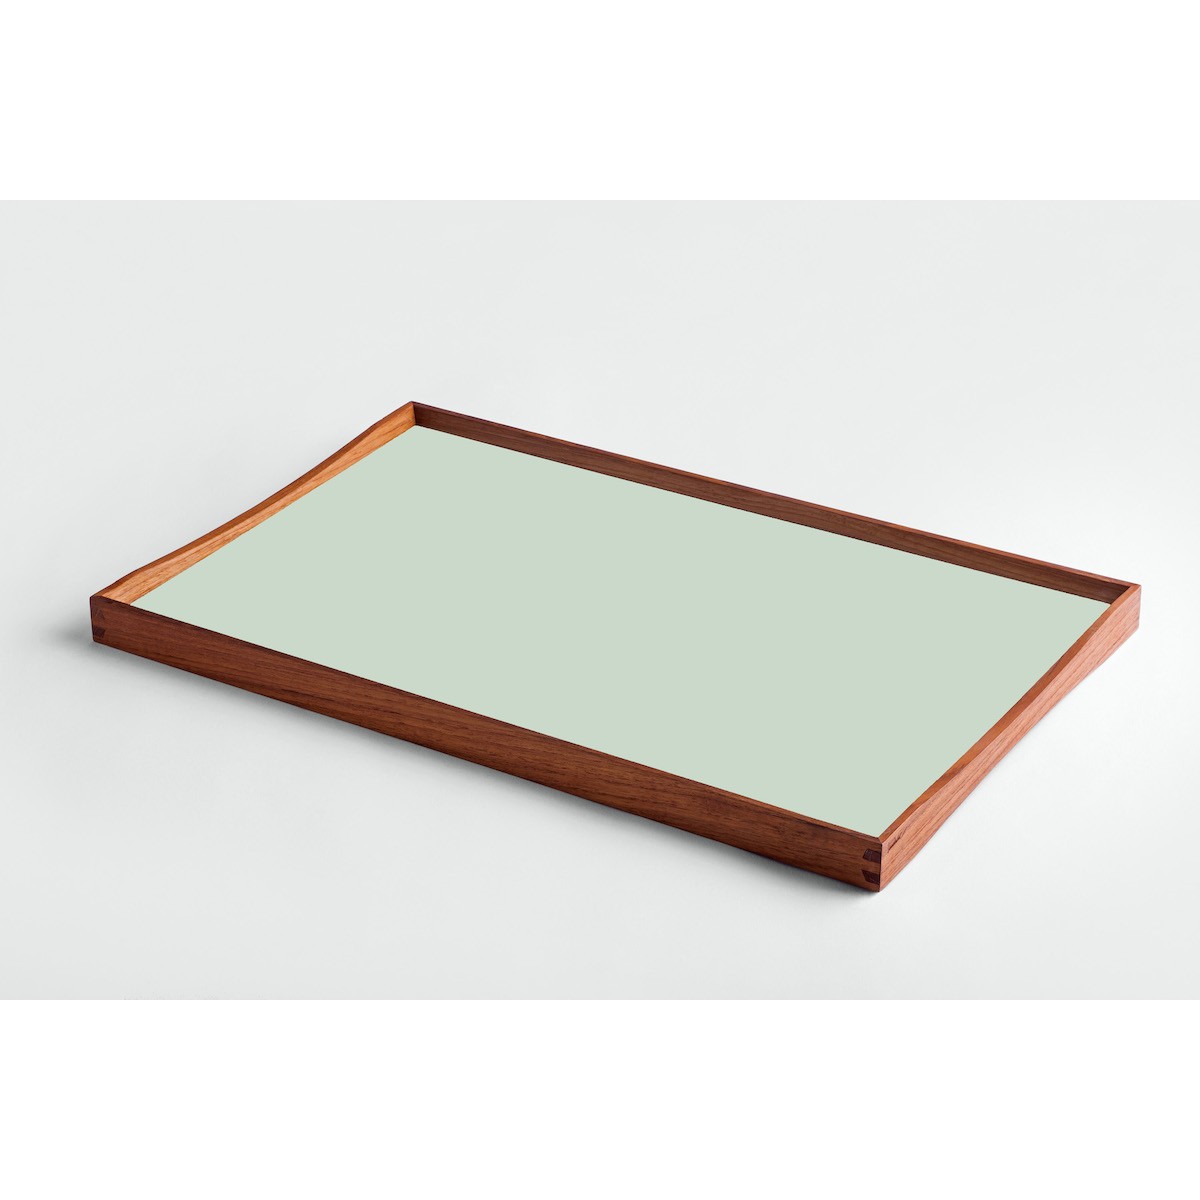 38 x 51 cm – Turning tray – vert et noir - L